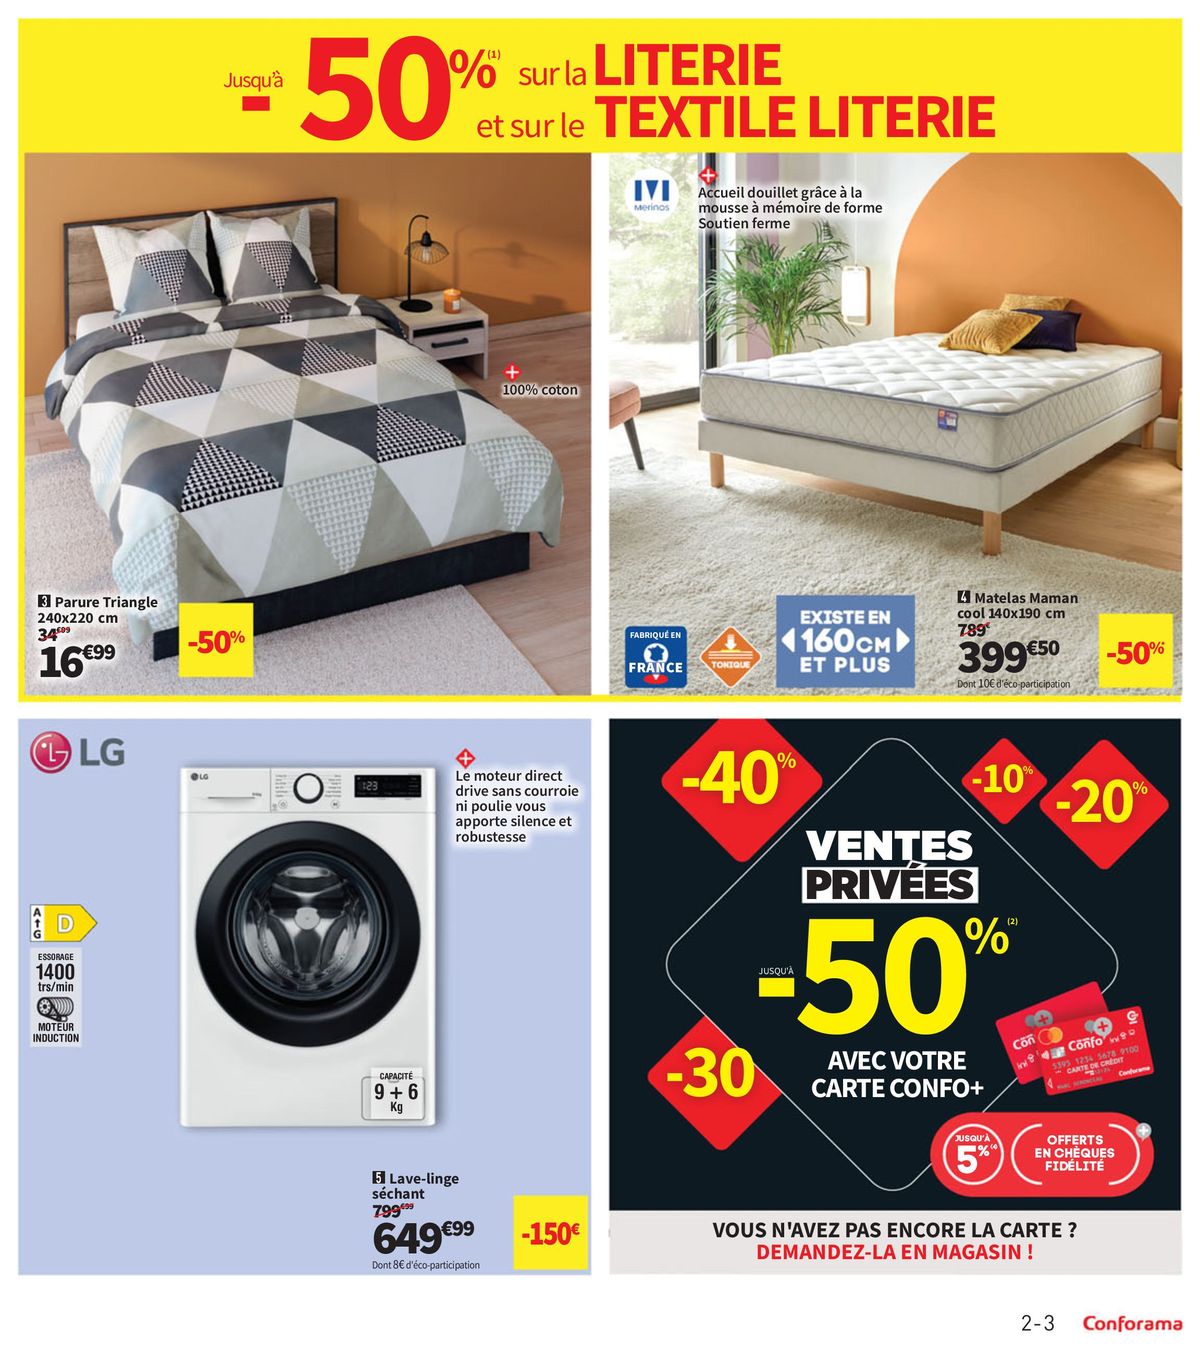 Catalogue -50% sur la literie et le textile literie, page 00003